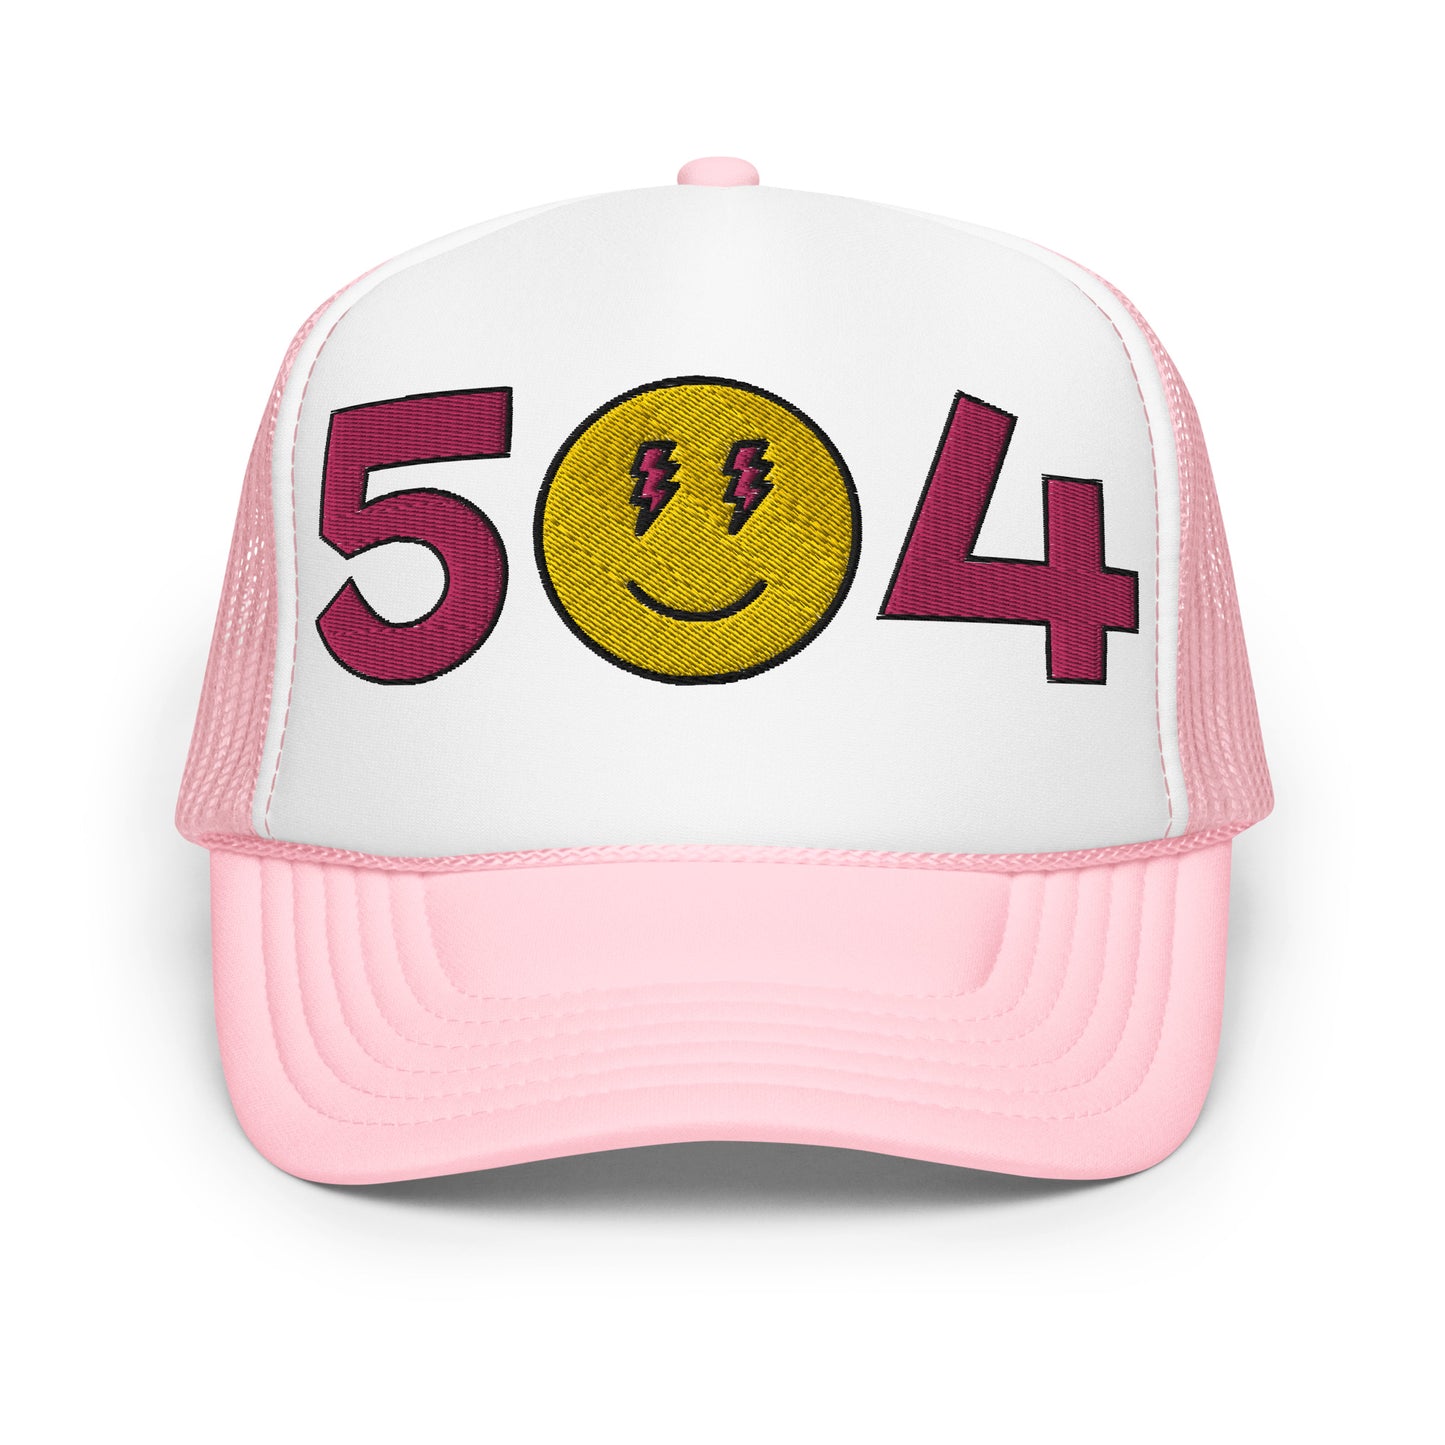 504 Pink Smiles Foam trucker hat